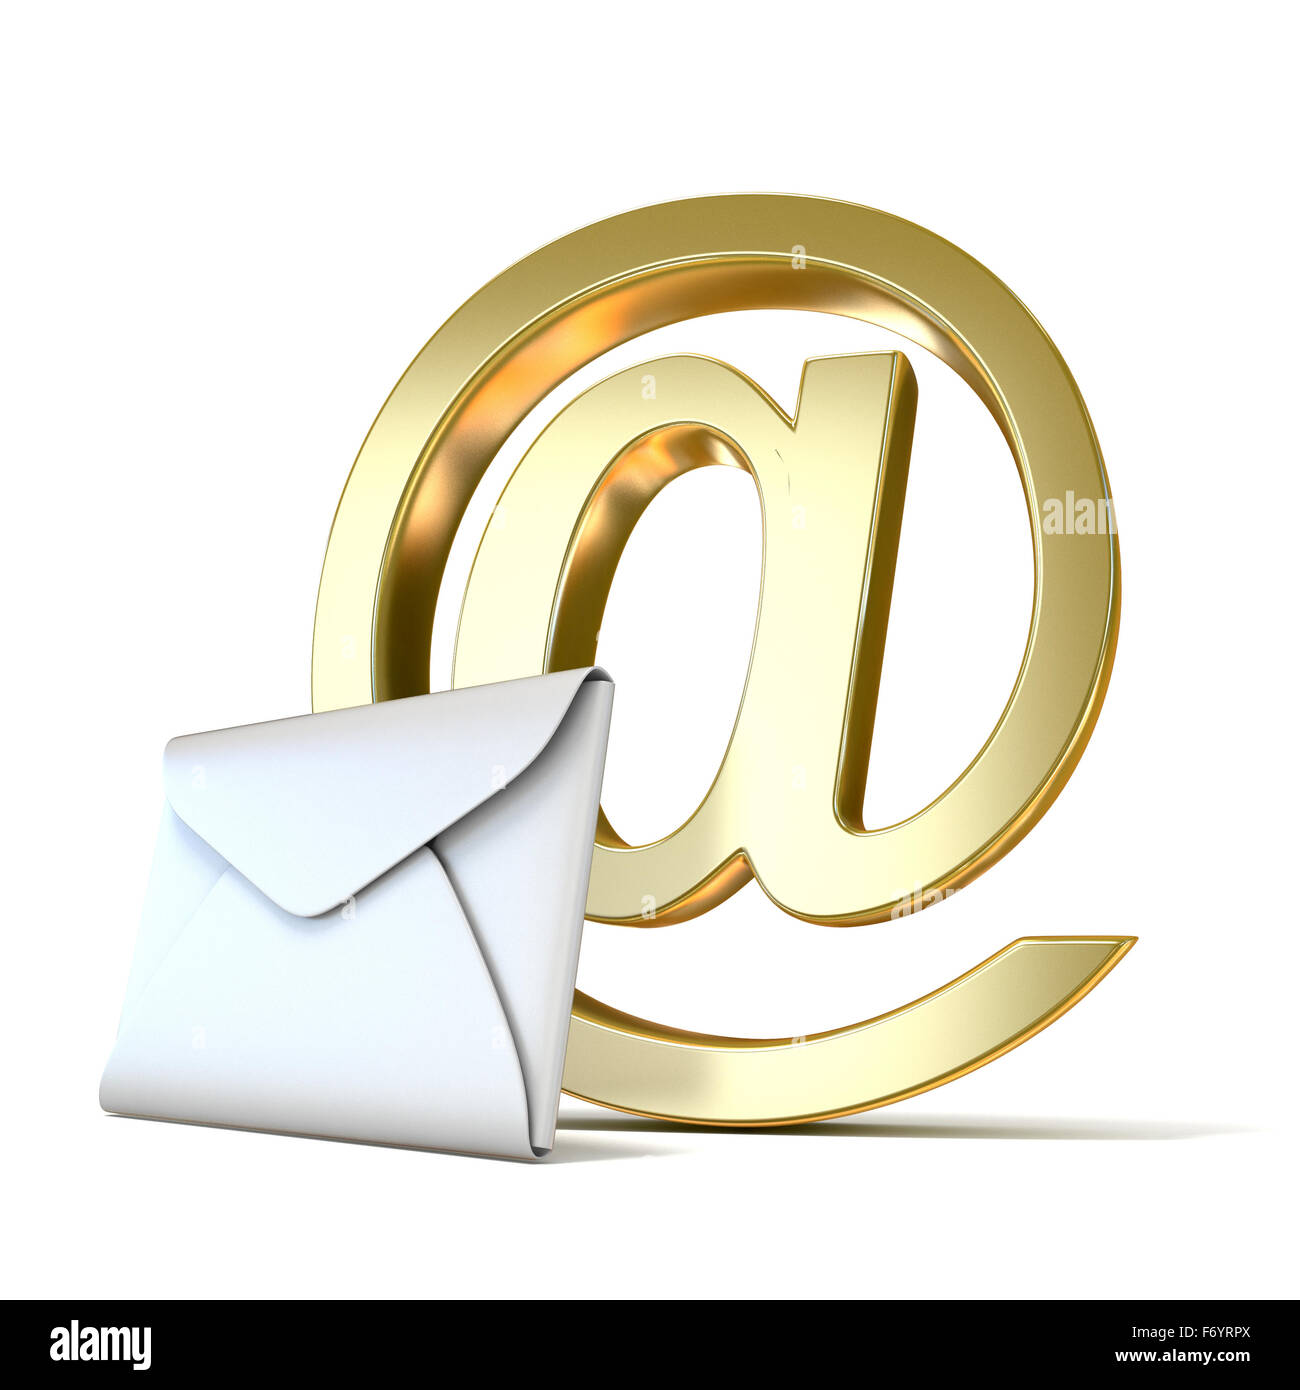 Enveloppe avec golden abonnement courriel. Rendu 3D illustration isolé sur fond blanc Banque D'Images